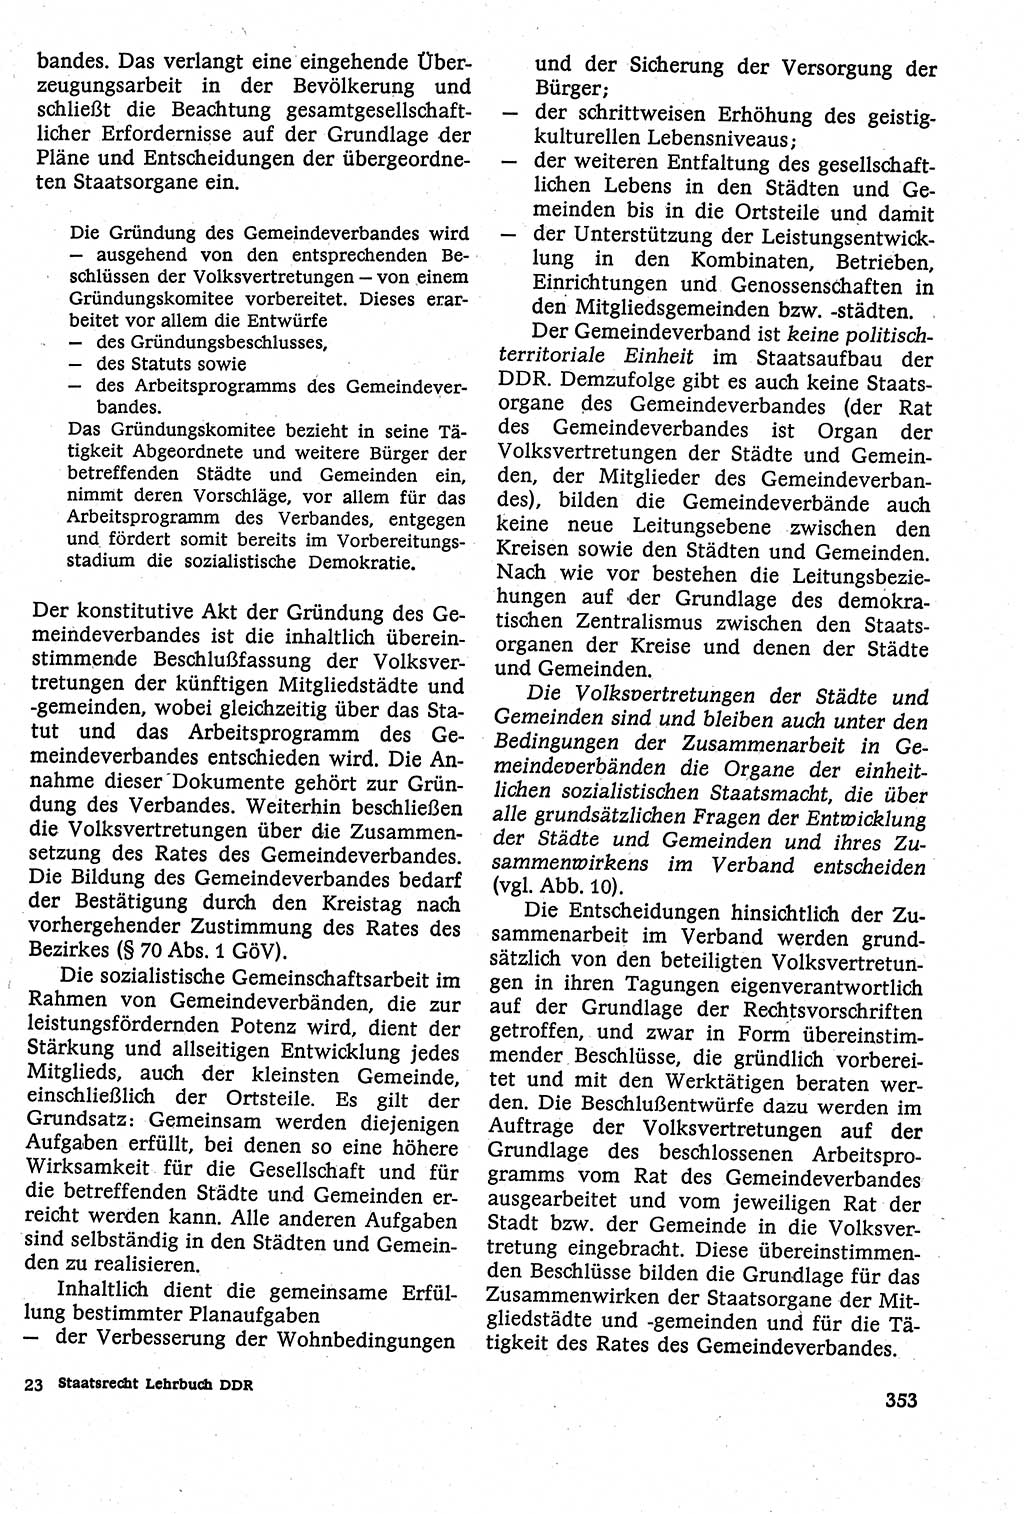 Staatsrecht der DDR [Deutsche Demokratische Republik (DDR)], Lehrbuch 1984, Seite 353 (St.-R. DDR Lb. 1984, S. 353)